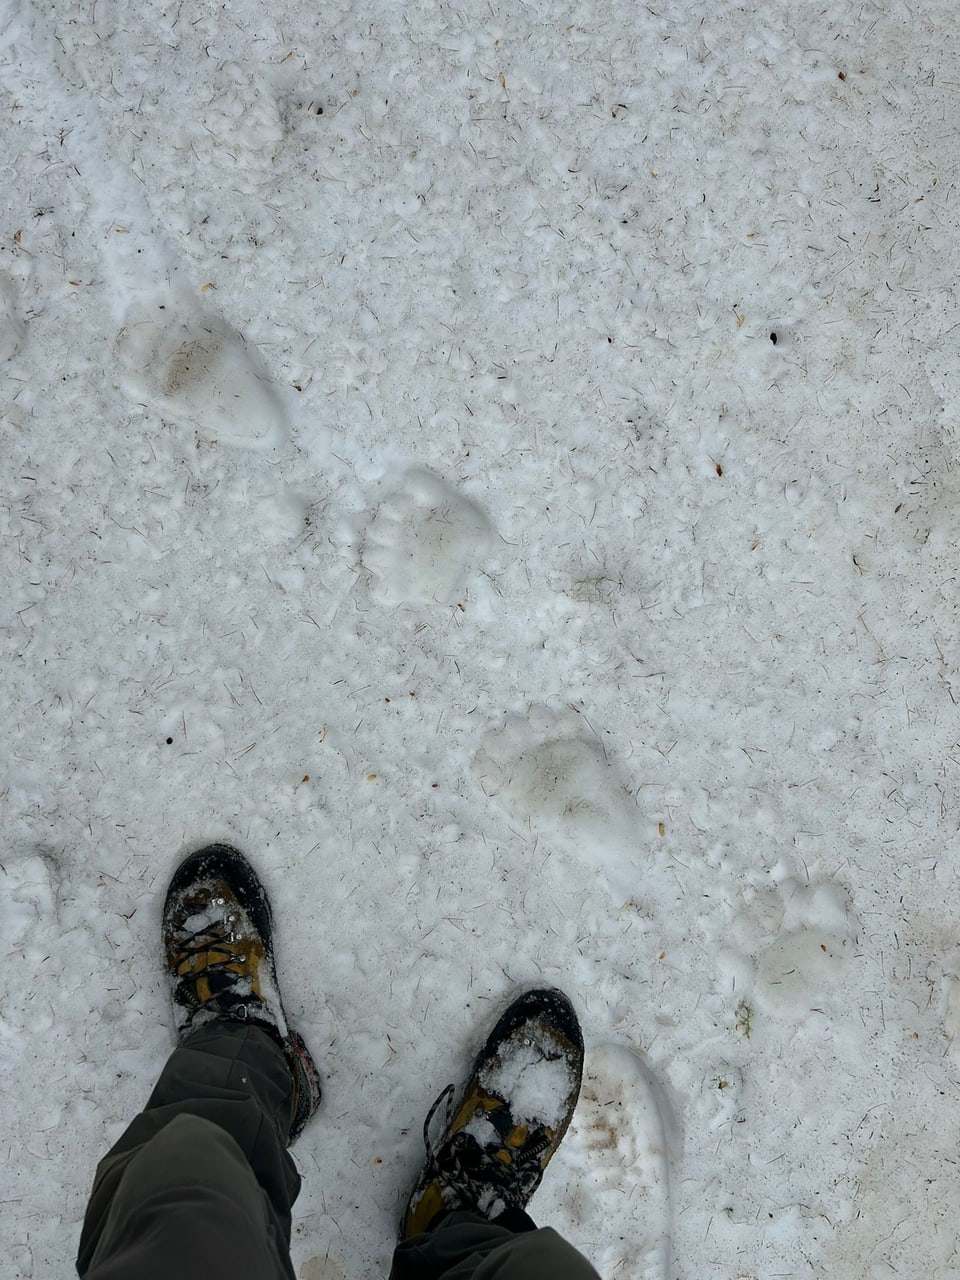 Personenfüsse in Winterschuhen auf schneebedecktem Boden mit Bärenspuren.